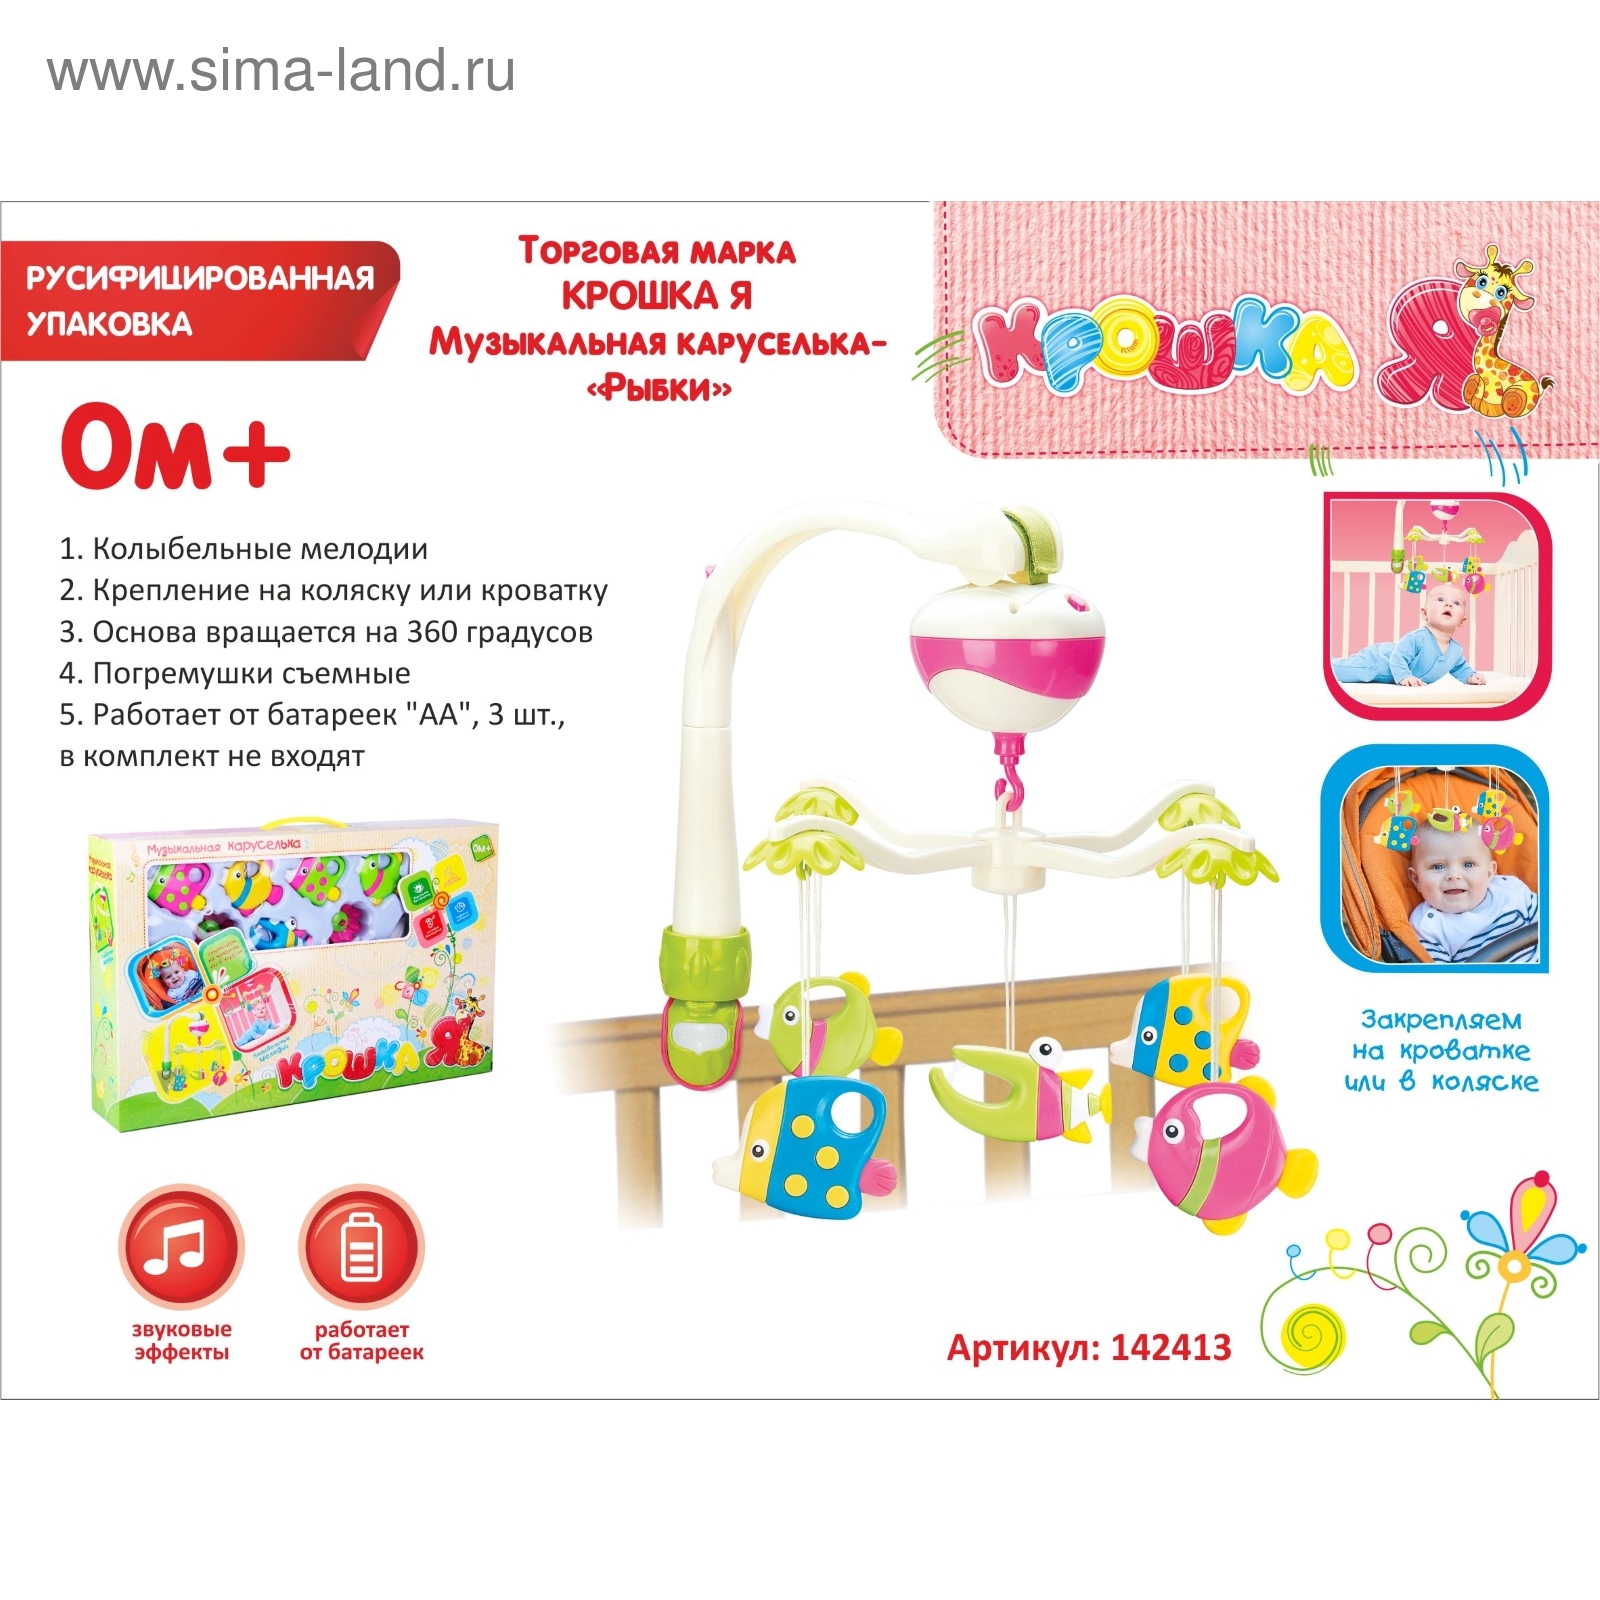 Основа для мобиля (кронштейн) деревянный купить в Украине | Пуговичок